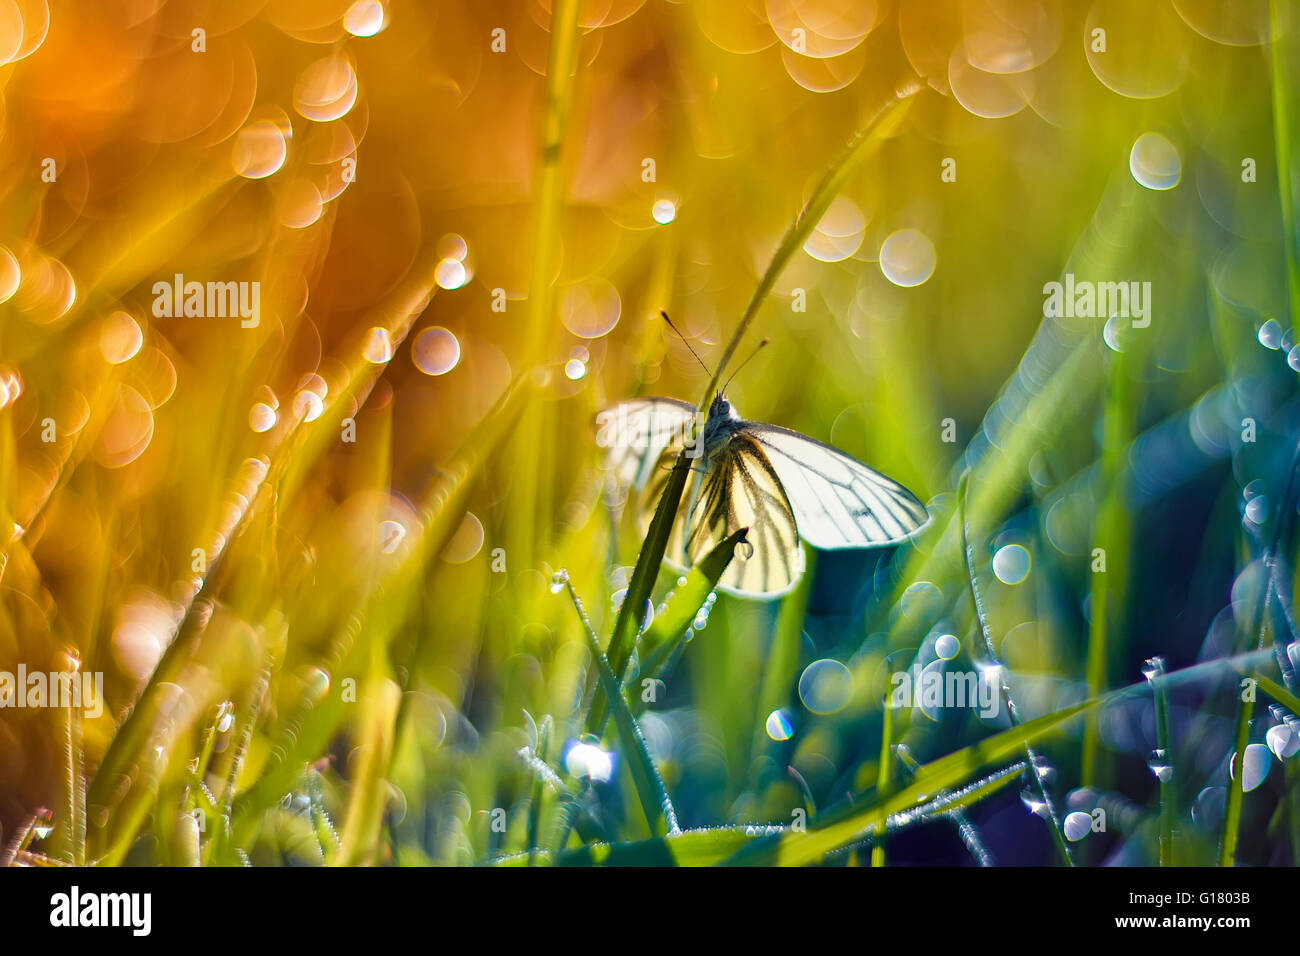 Hintergrund, schöne, helle, Schmetterling, Farbe, bunt, Feld, Fliege, Garten, Rasen, grün, Insekt, Blatt, Leben, Licht, Makro Stockfoto